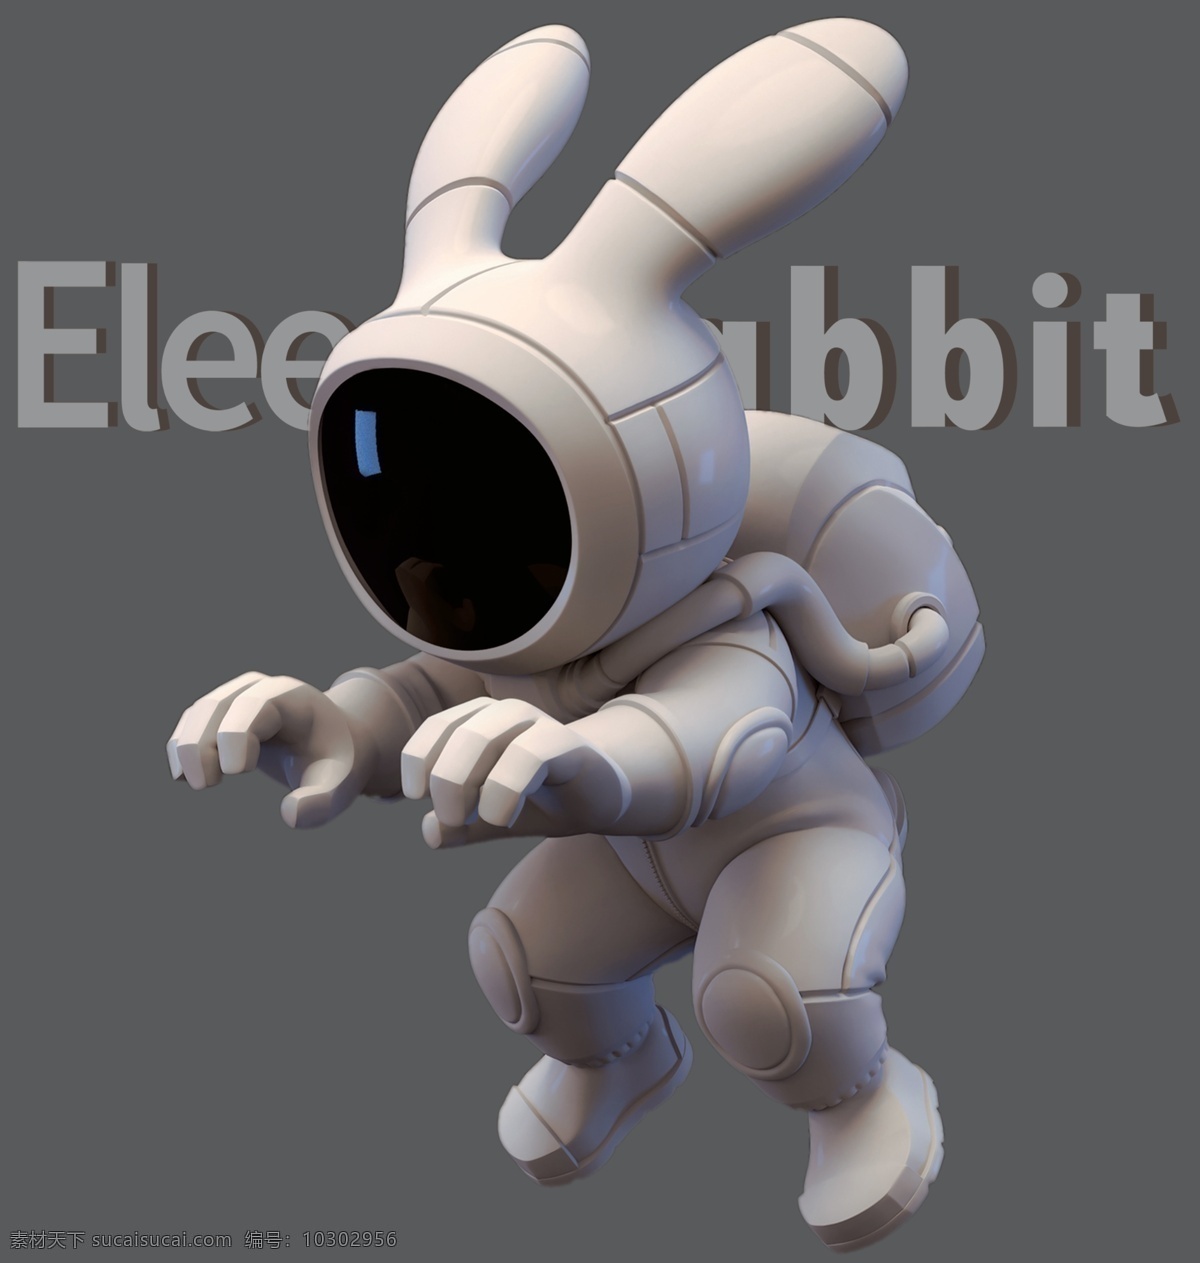 太空兔 t恤 裁片图片 兔子 太空 裁片 胶图 卡通 elee 数码 服装设计